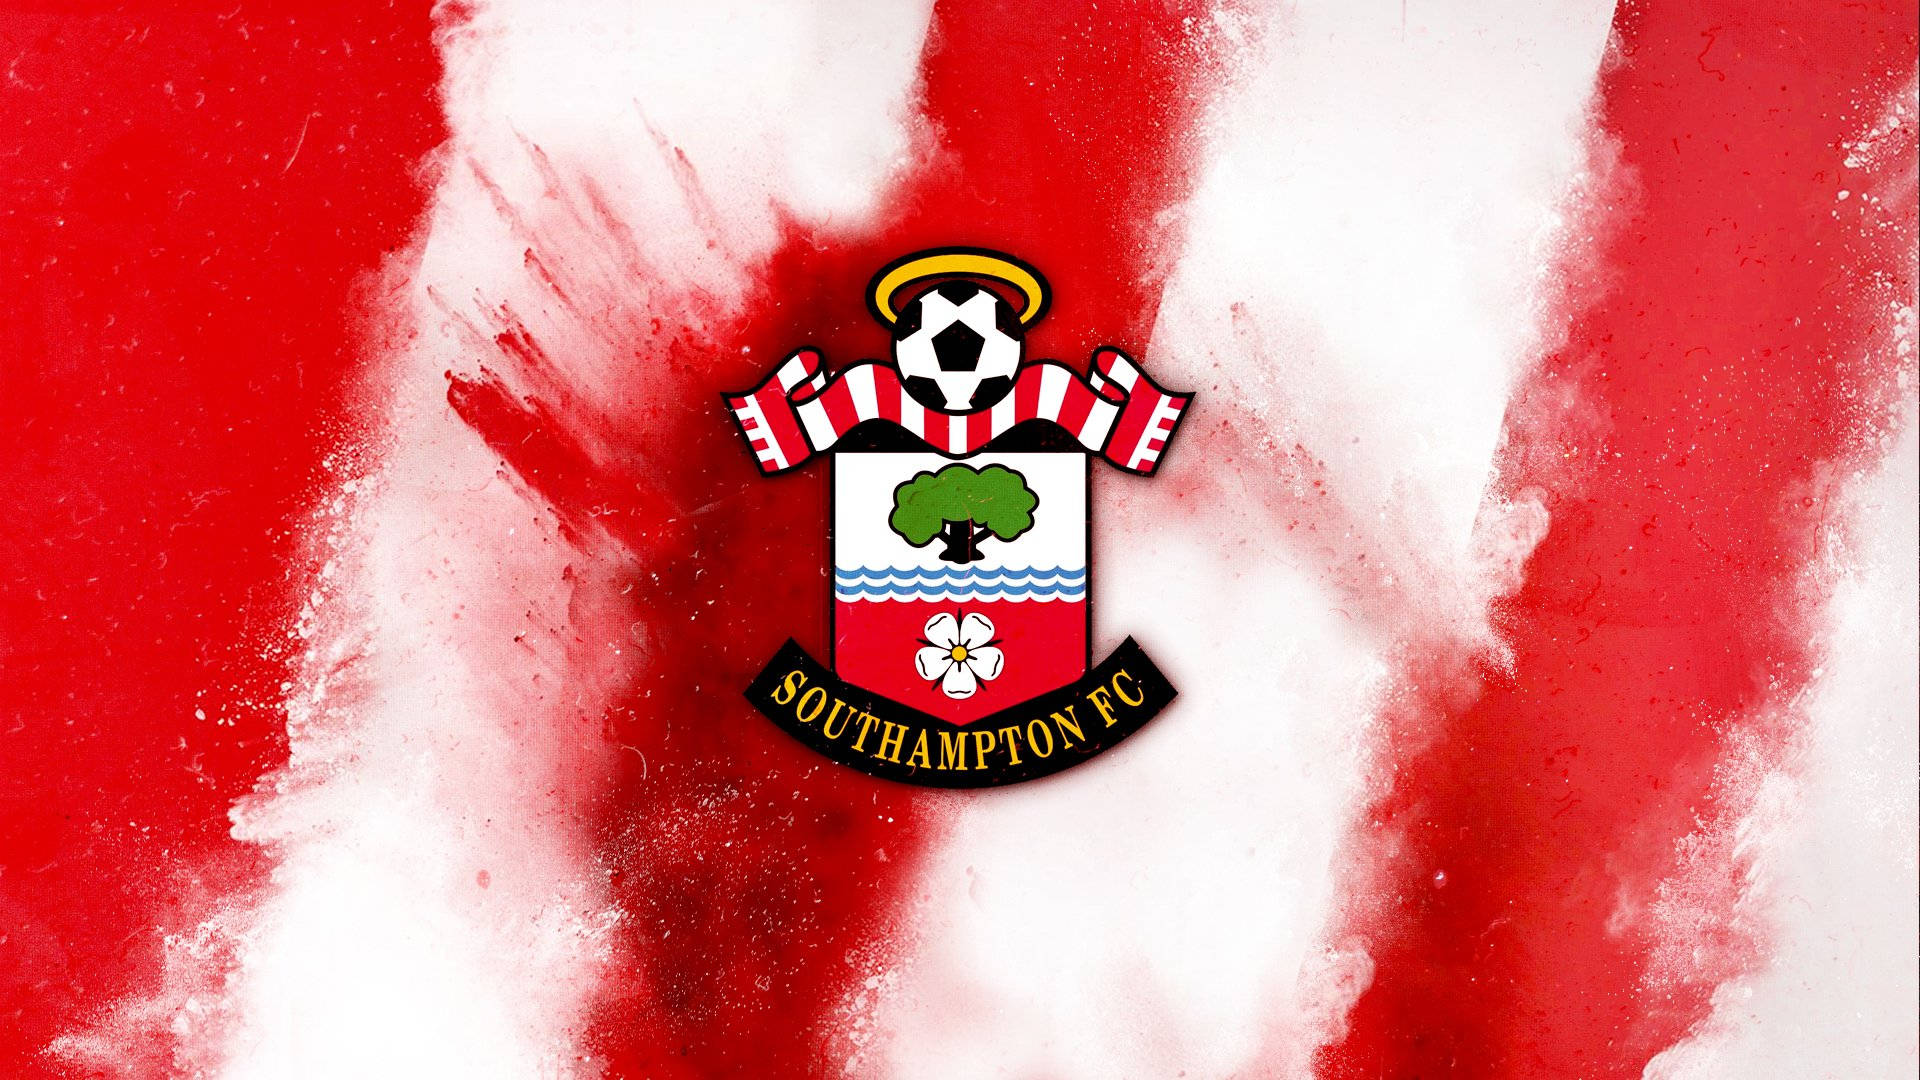 Smokey Southampton FC Logo Wallpaper